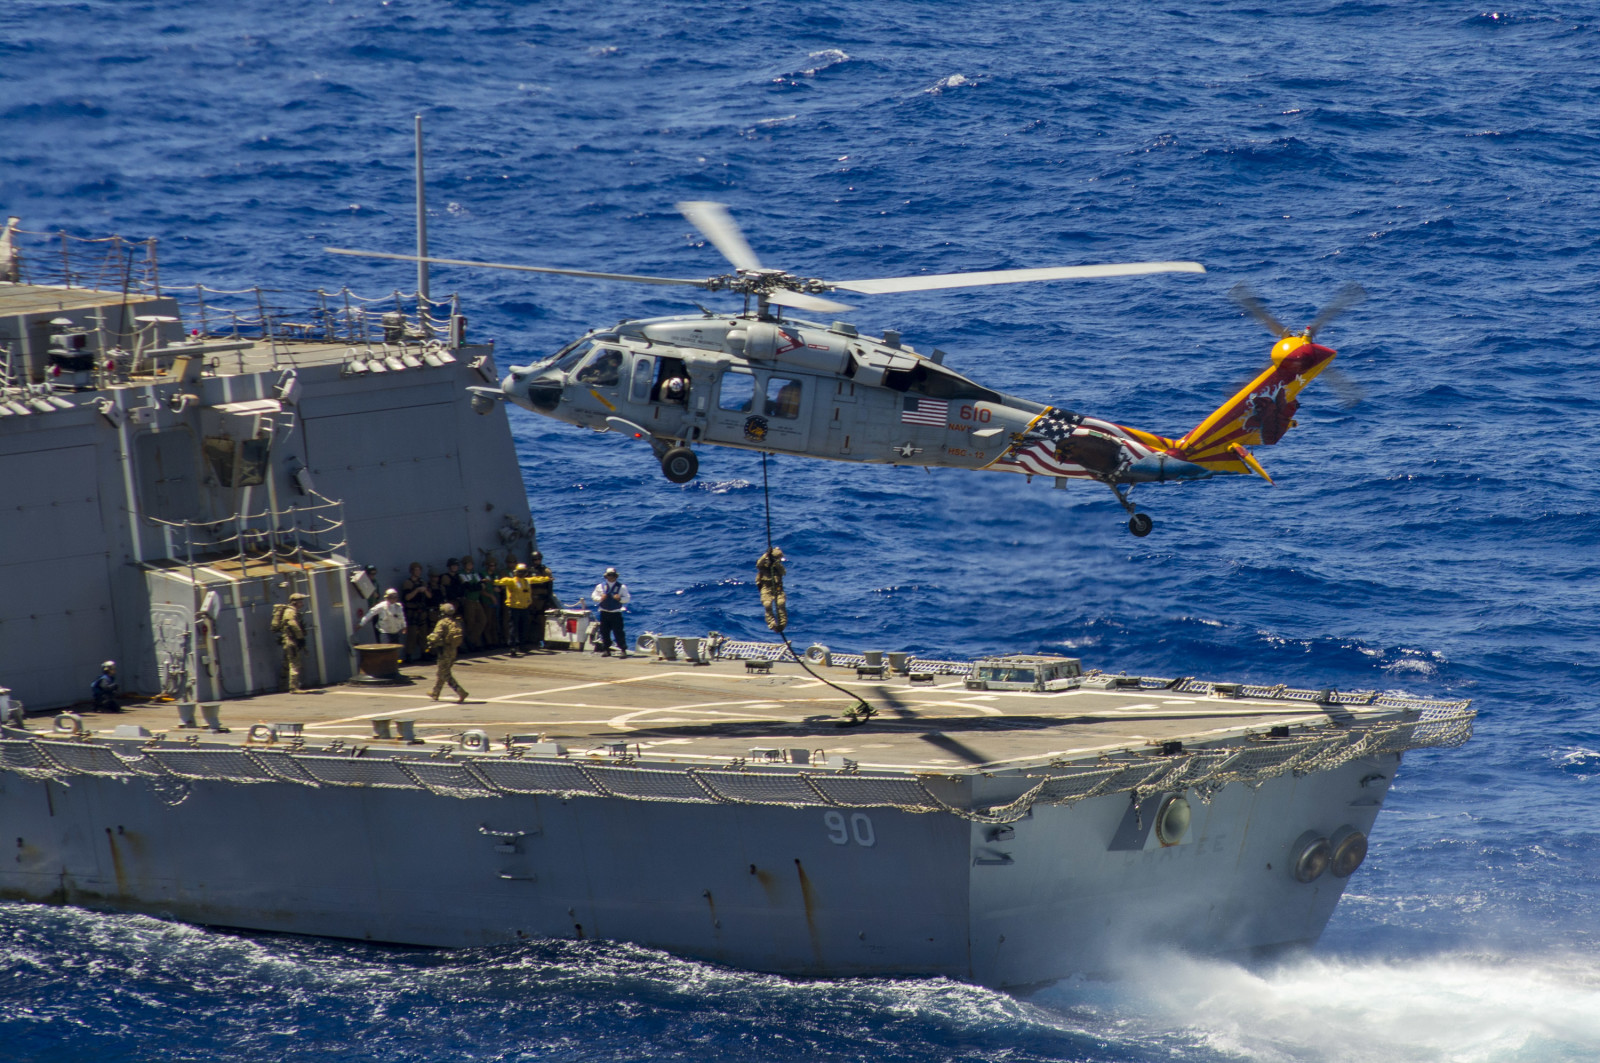 máy bay trực thăng, đổ bộ, Đa năng, Chim ưng biển, "Chim ưng biển", MH-60S